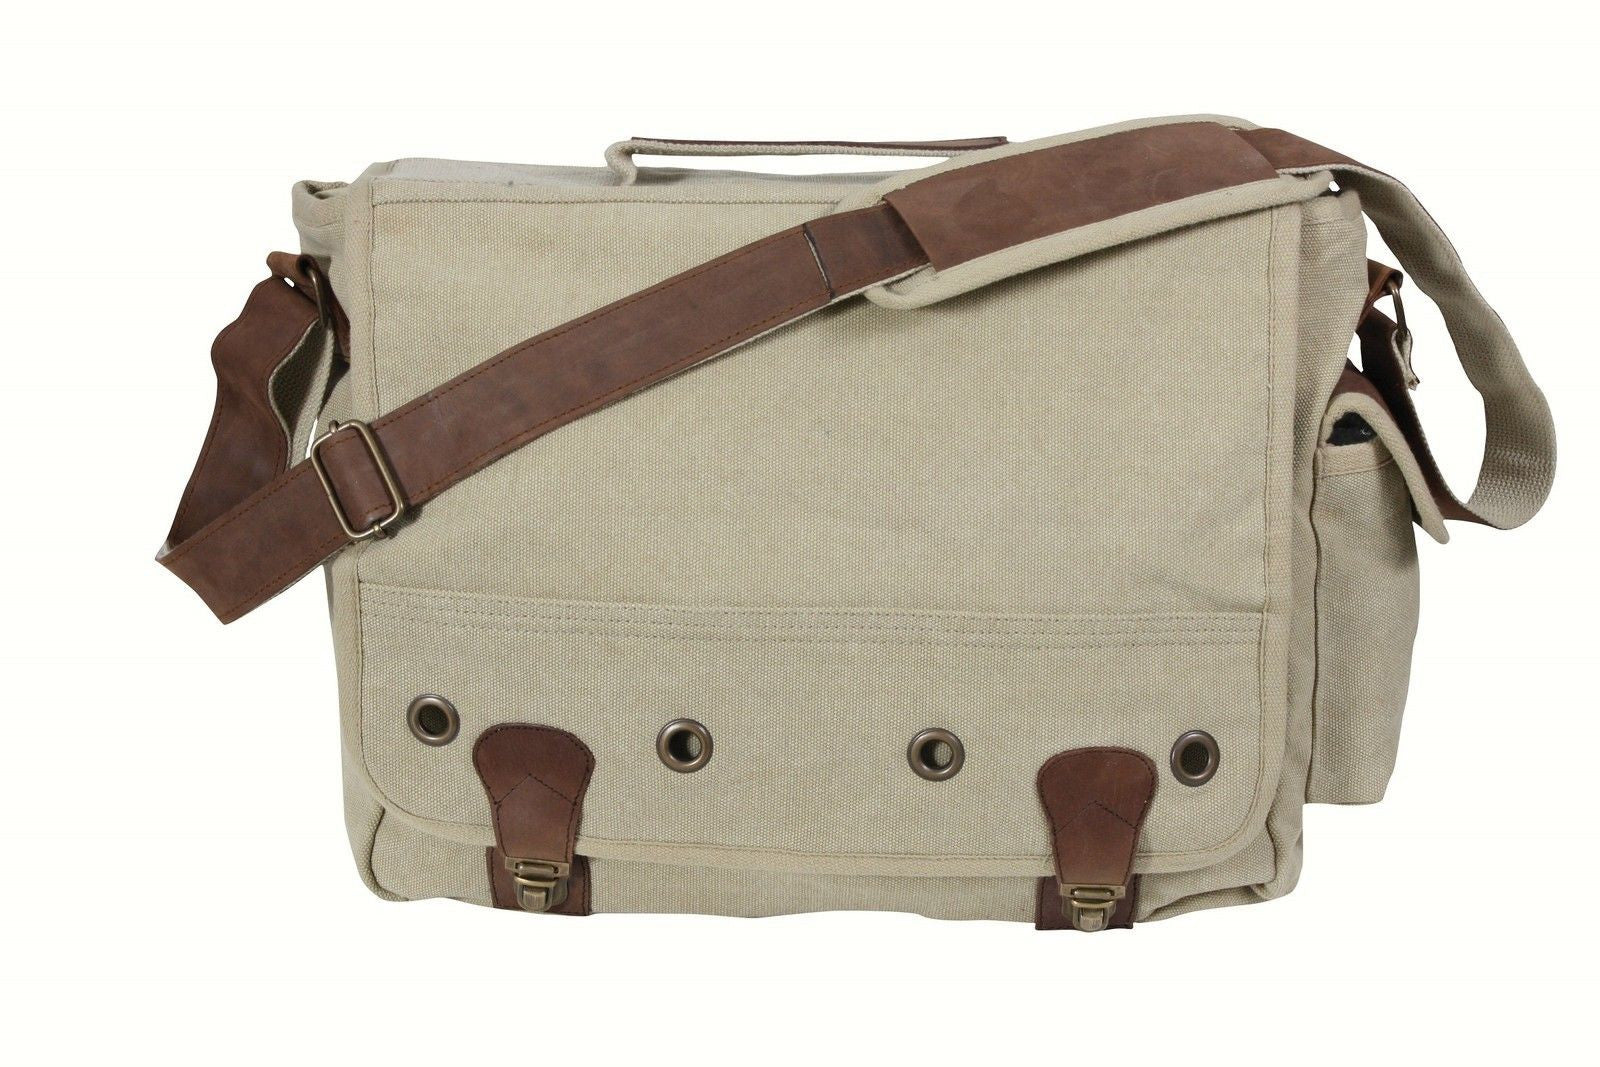  Rothco Vintage Canvas Messenger Bag Crossbody Shoulder